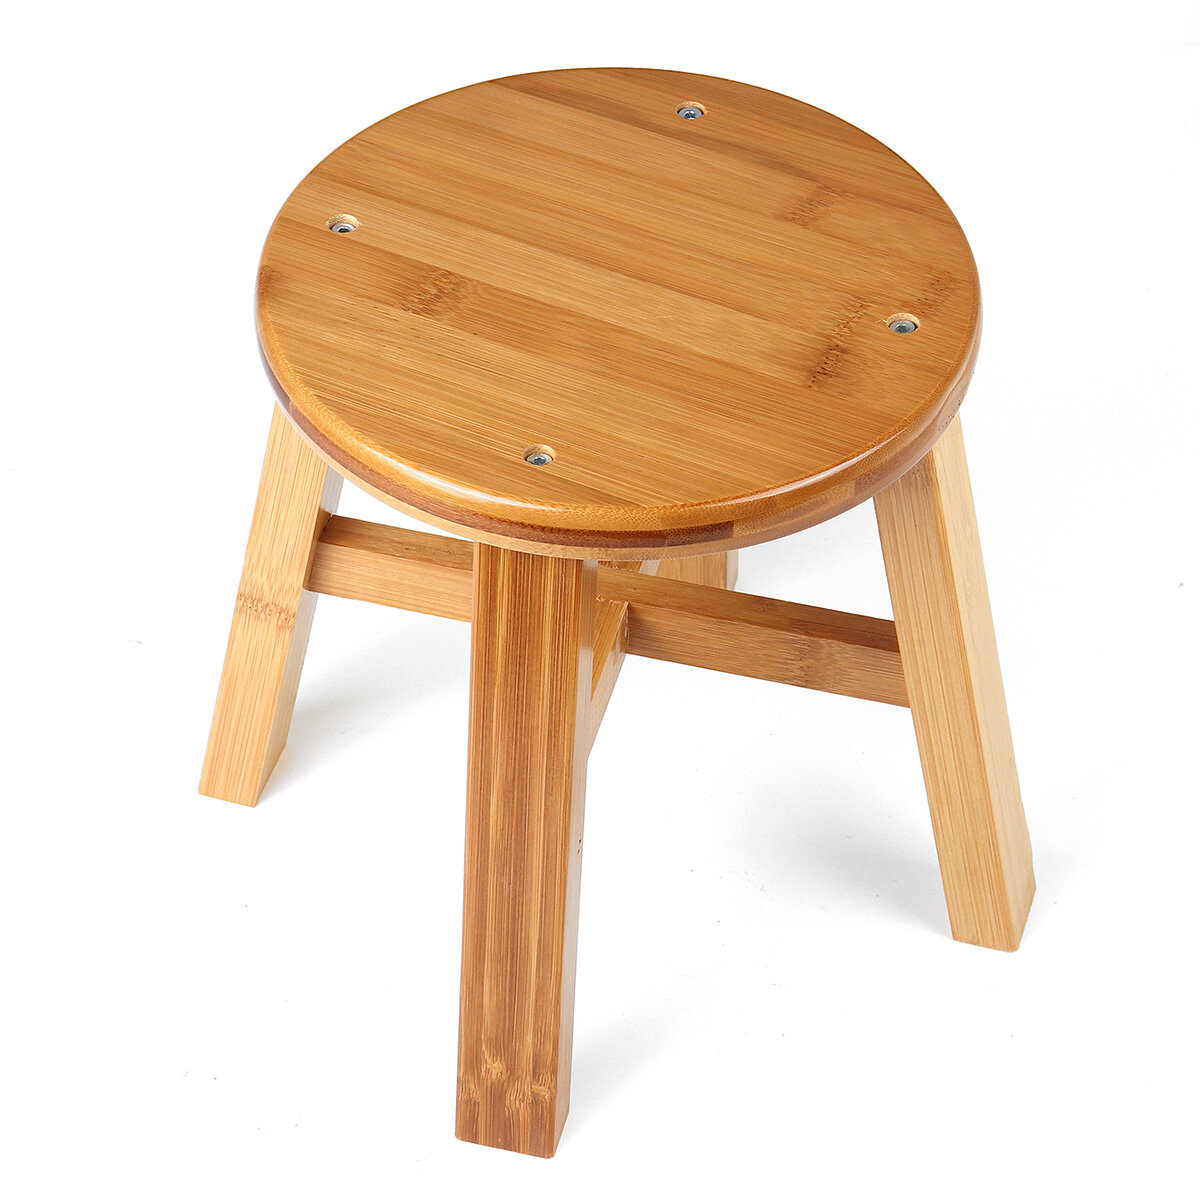 دائري الصلبة خشبية البراز مقعد صغير أريكة طاولة شاي كرسي حذاء مقعد البراز للأطفال الكبار البراز غرفة المعيشة